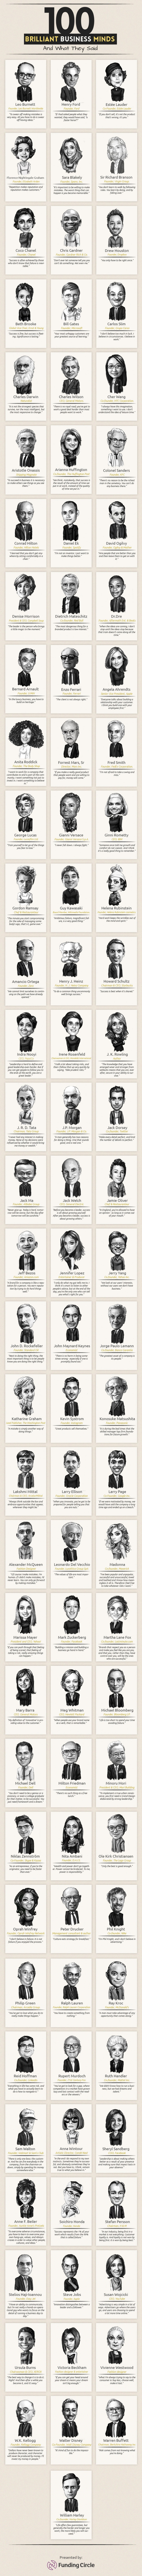 100-brilliant-business-minds